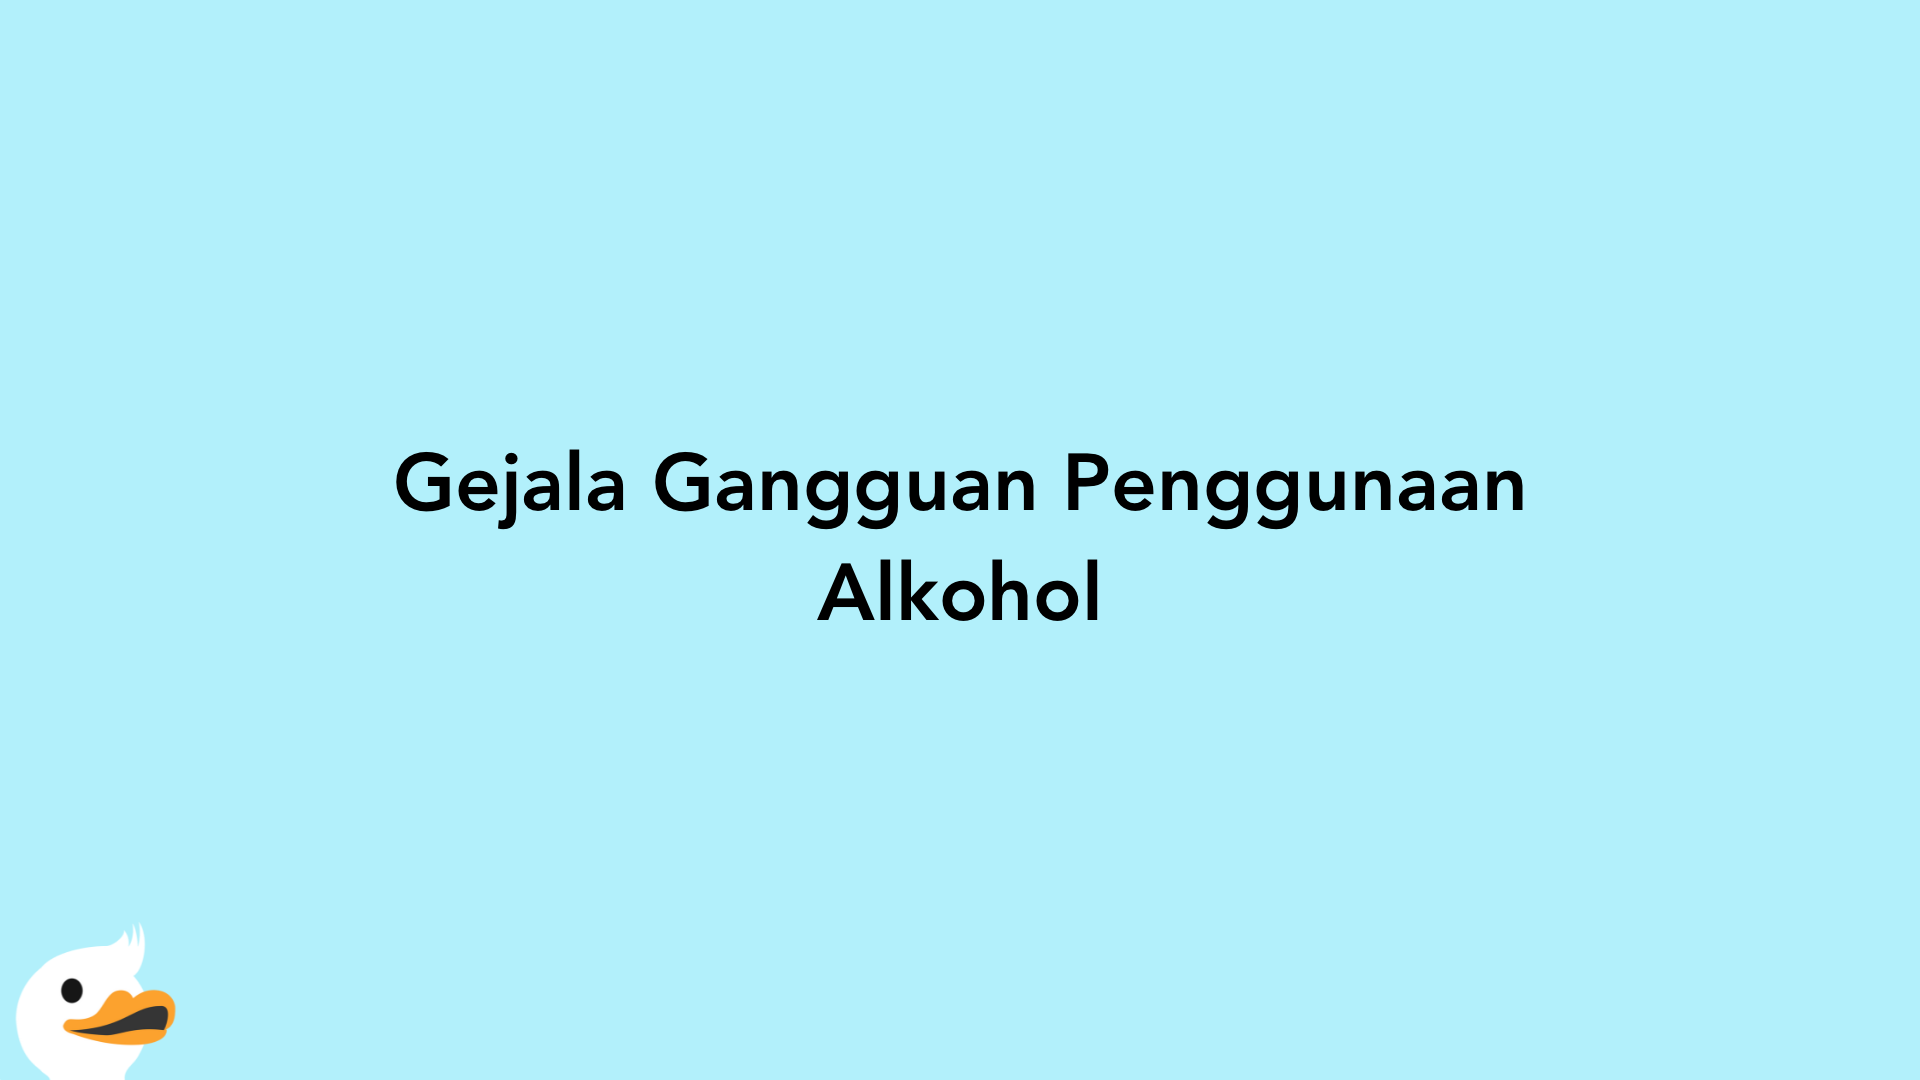 Gejala Gangguan Penggunaan Alkohol